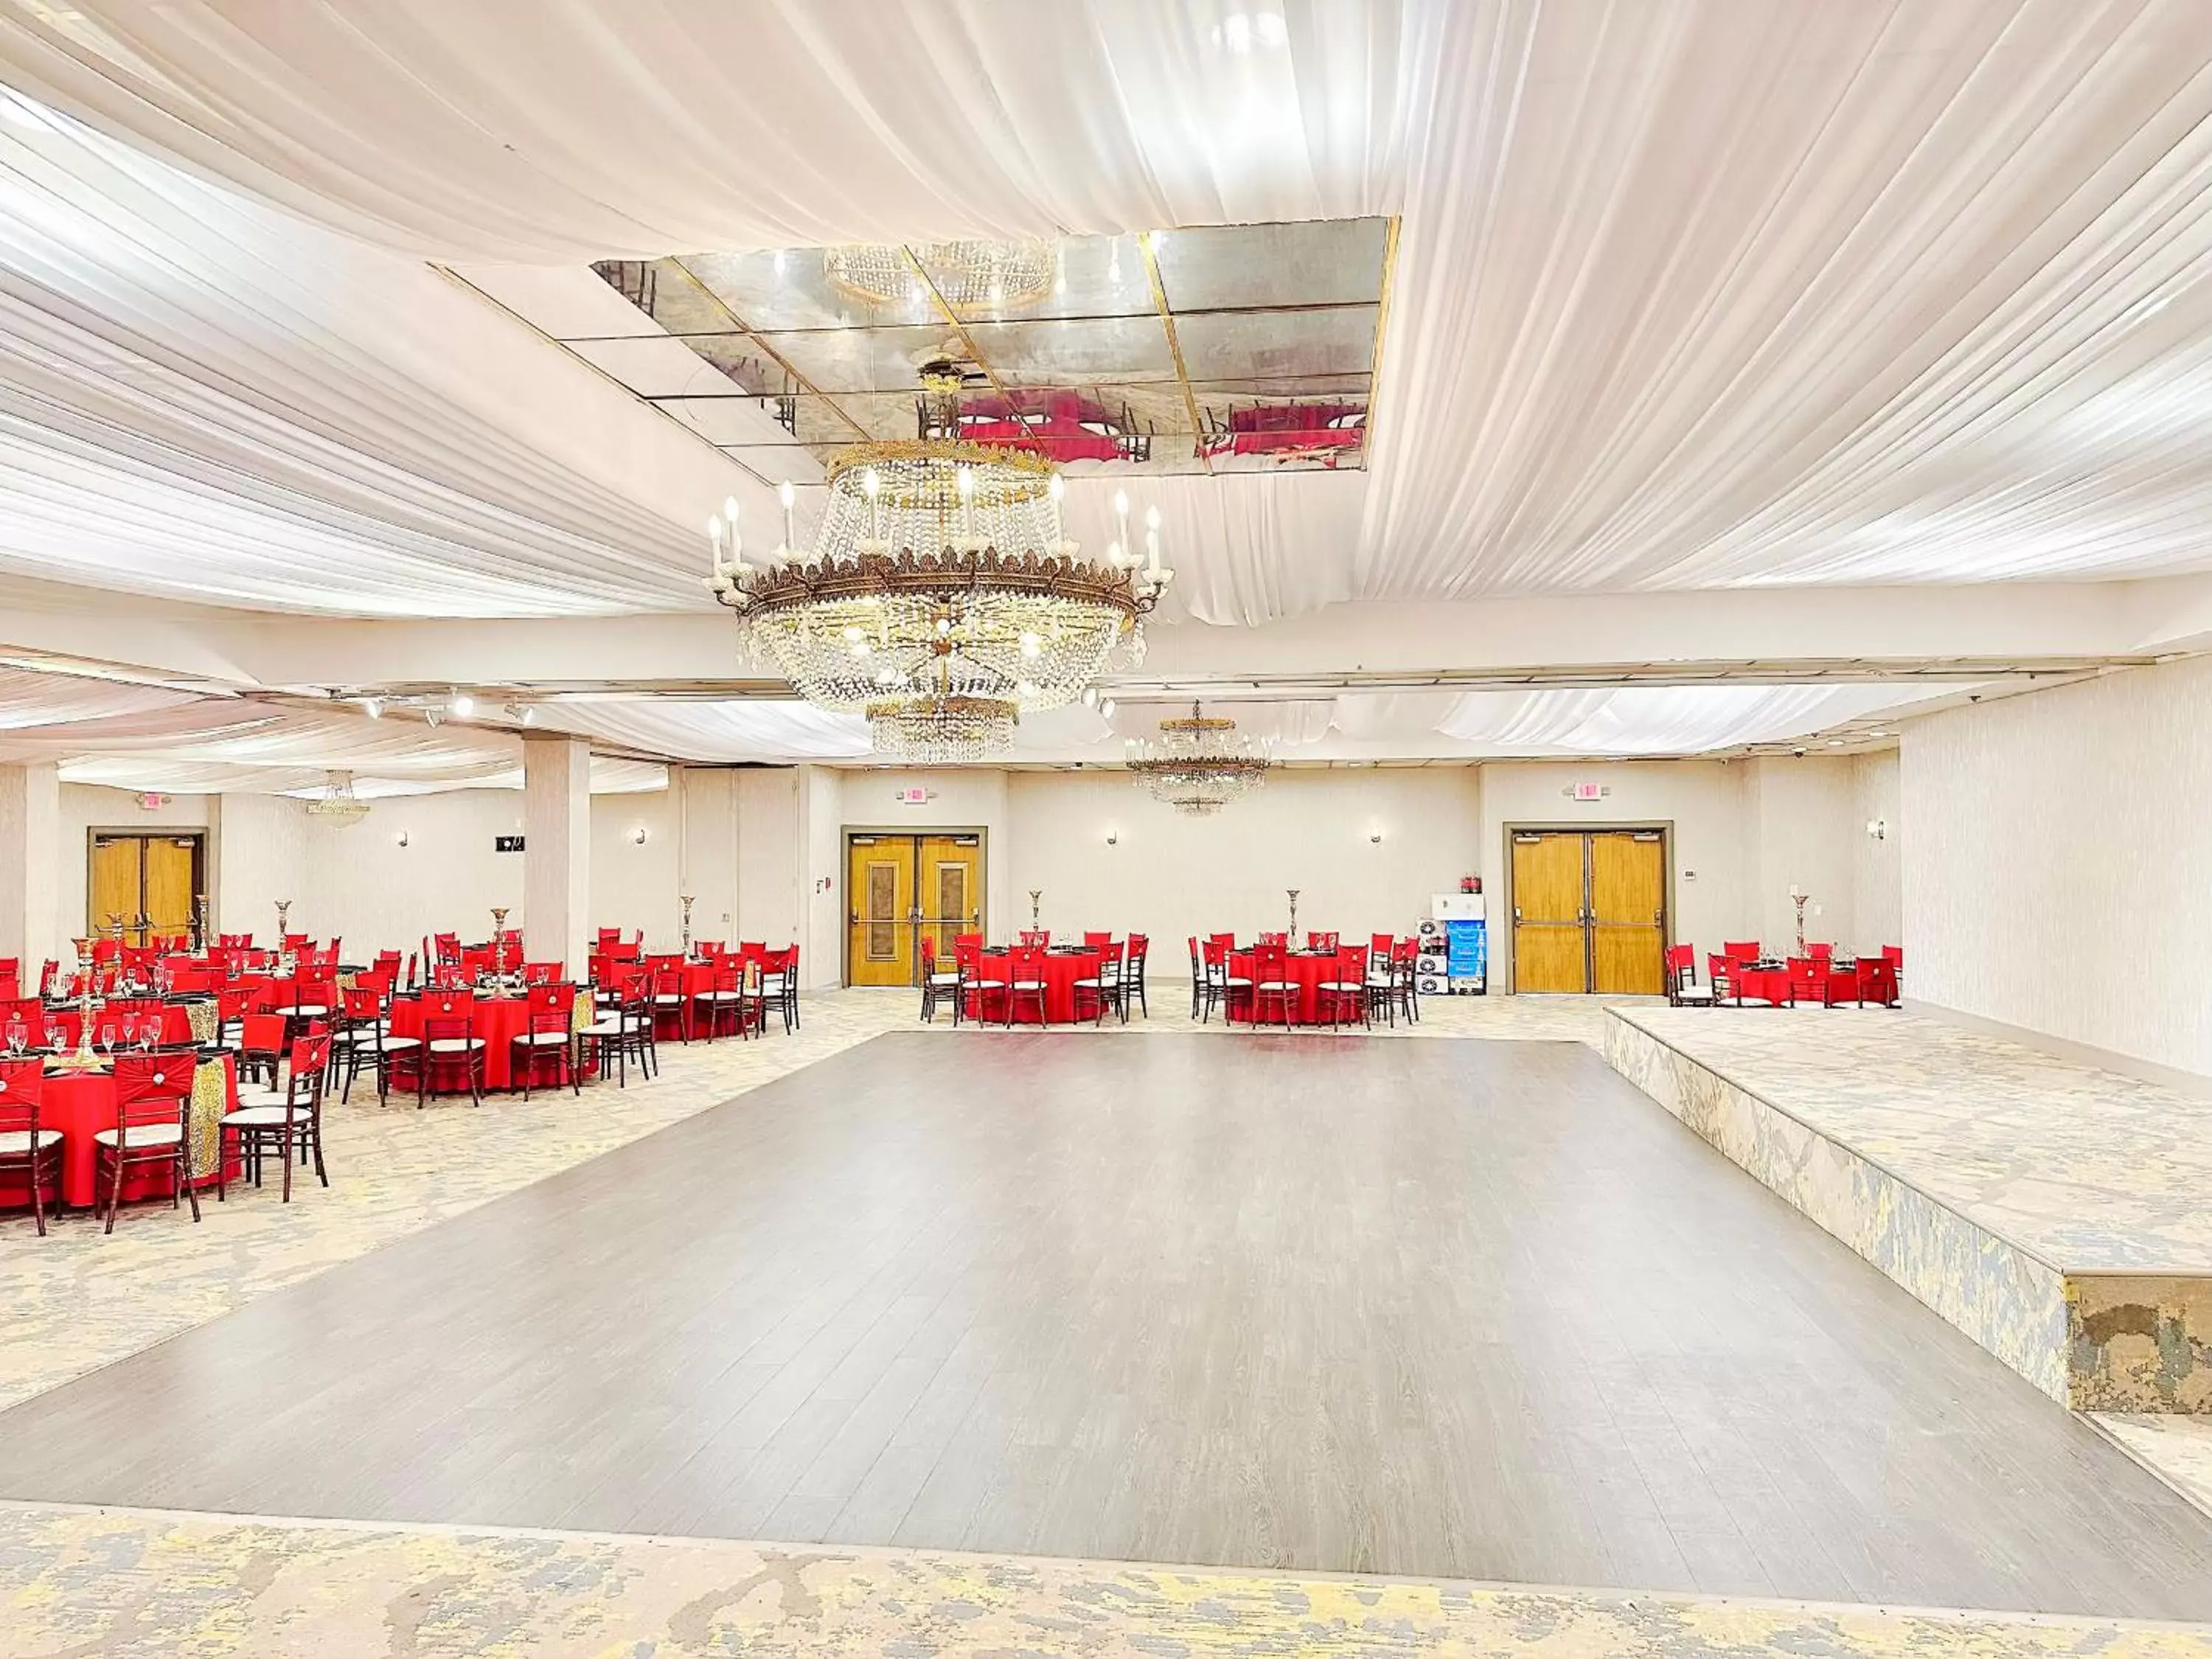 Banquet/Function facilities, Banquet Facilities in Lincoln Hotel Monterey Park Los Angeles